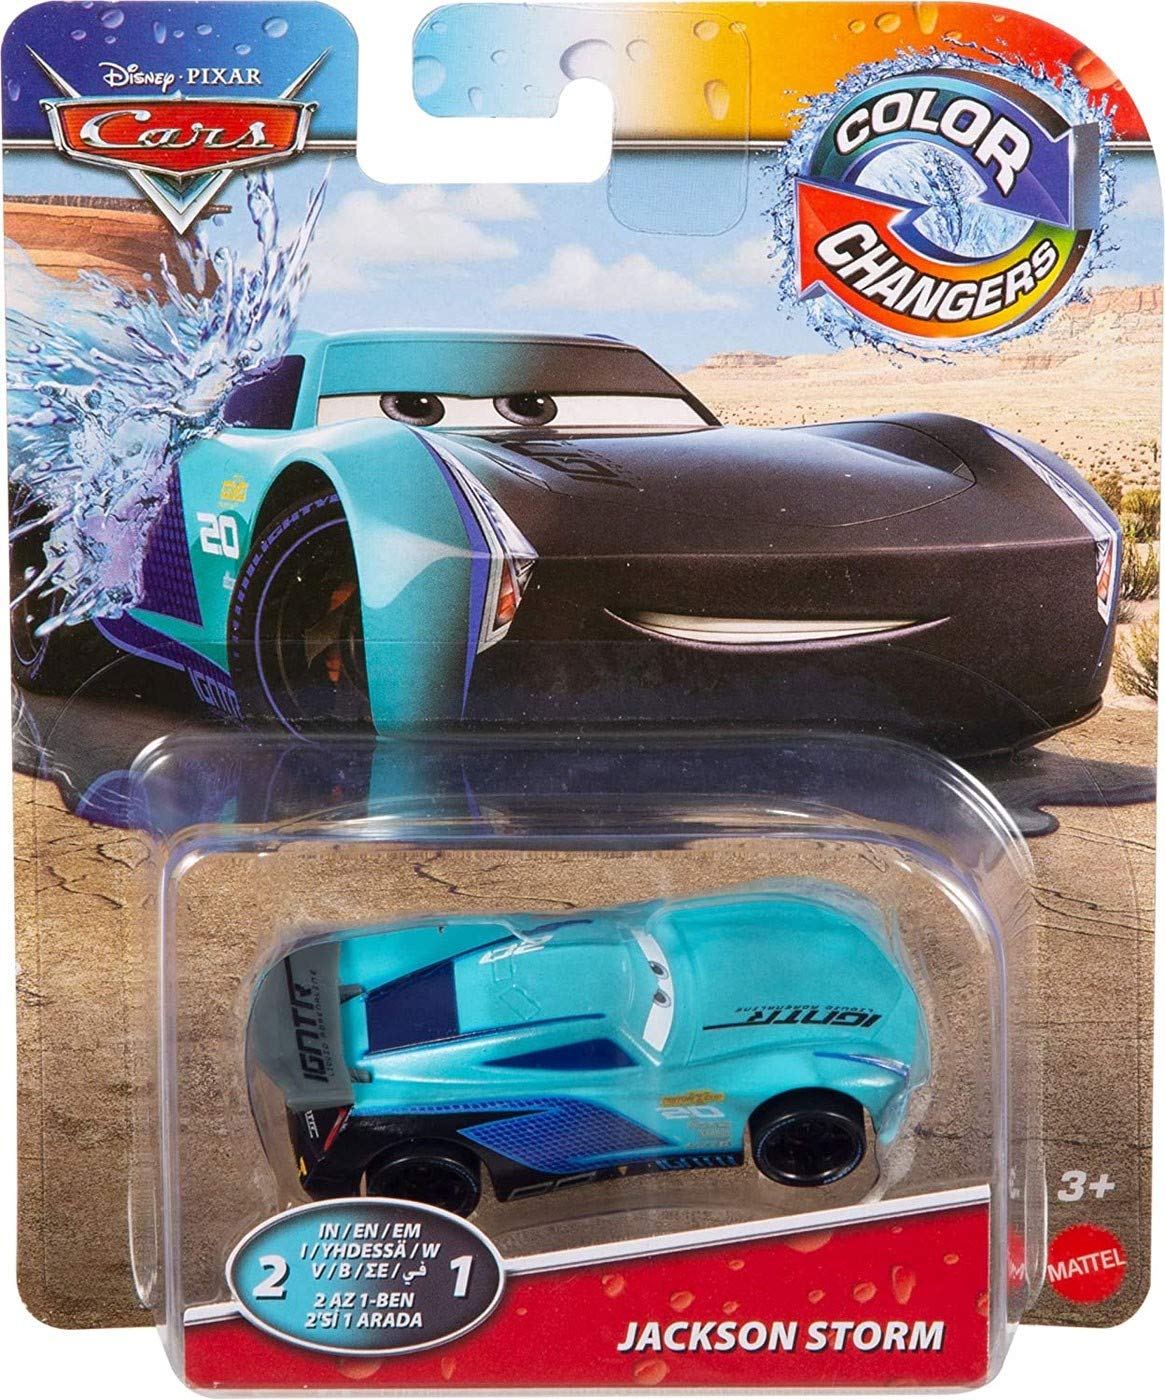 Tonies Disney Pixar Cars - Lightning McQueen